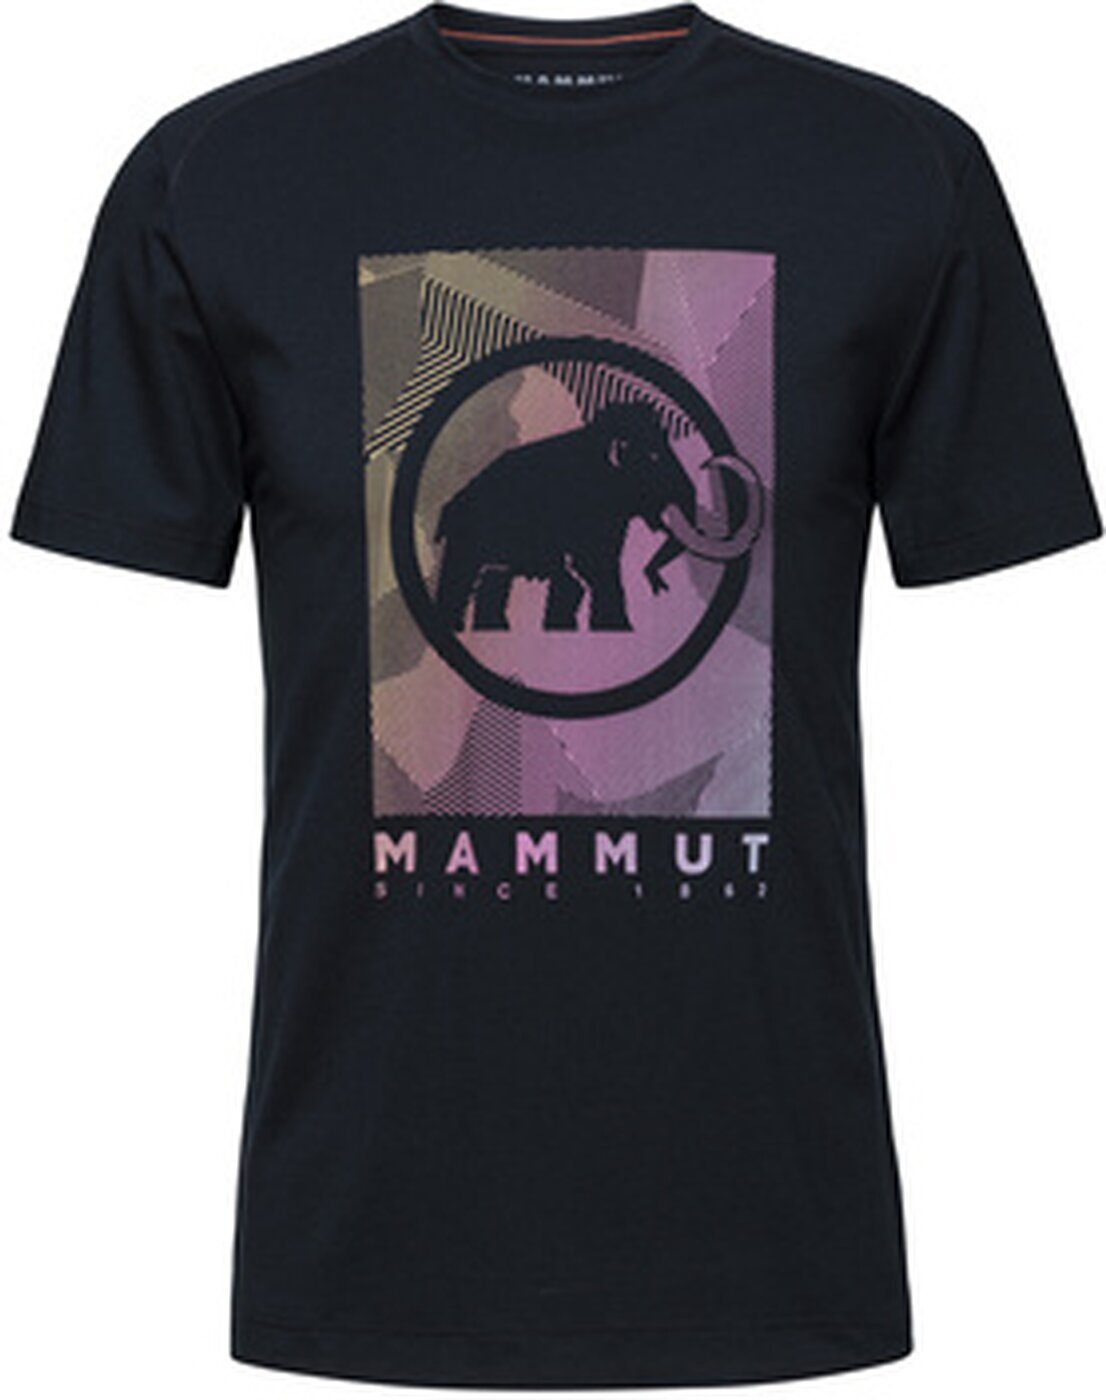 Mammut T-Shirt Shirt Mammut Trovat Herren 00254 black PRT2